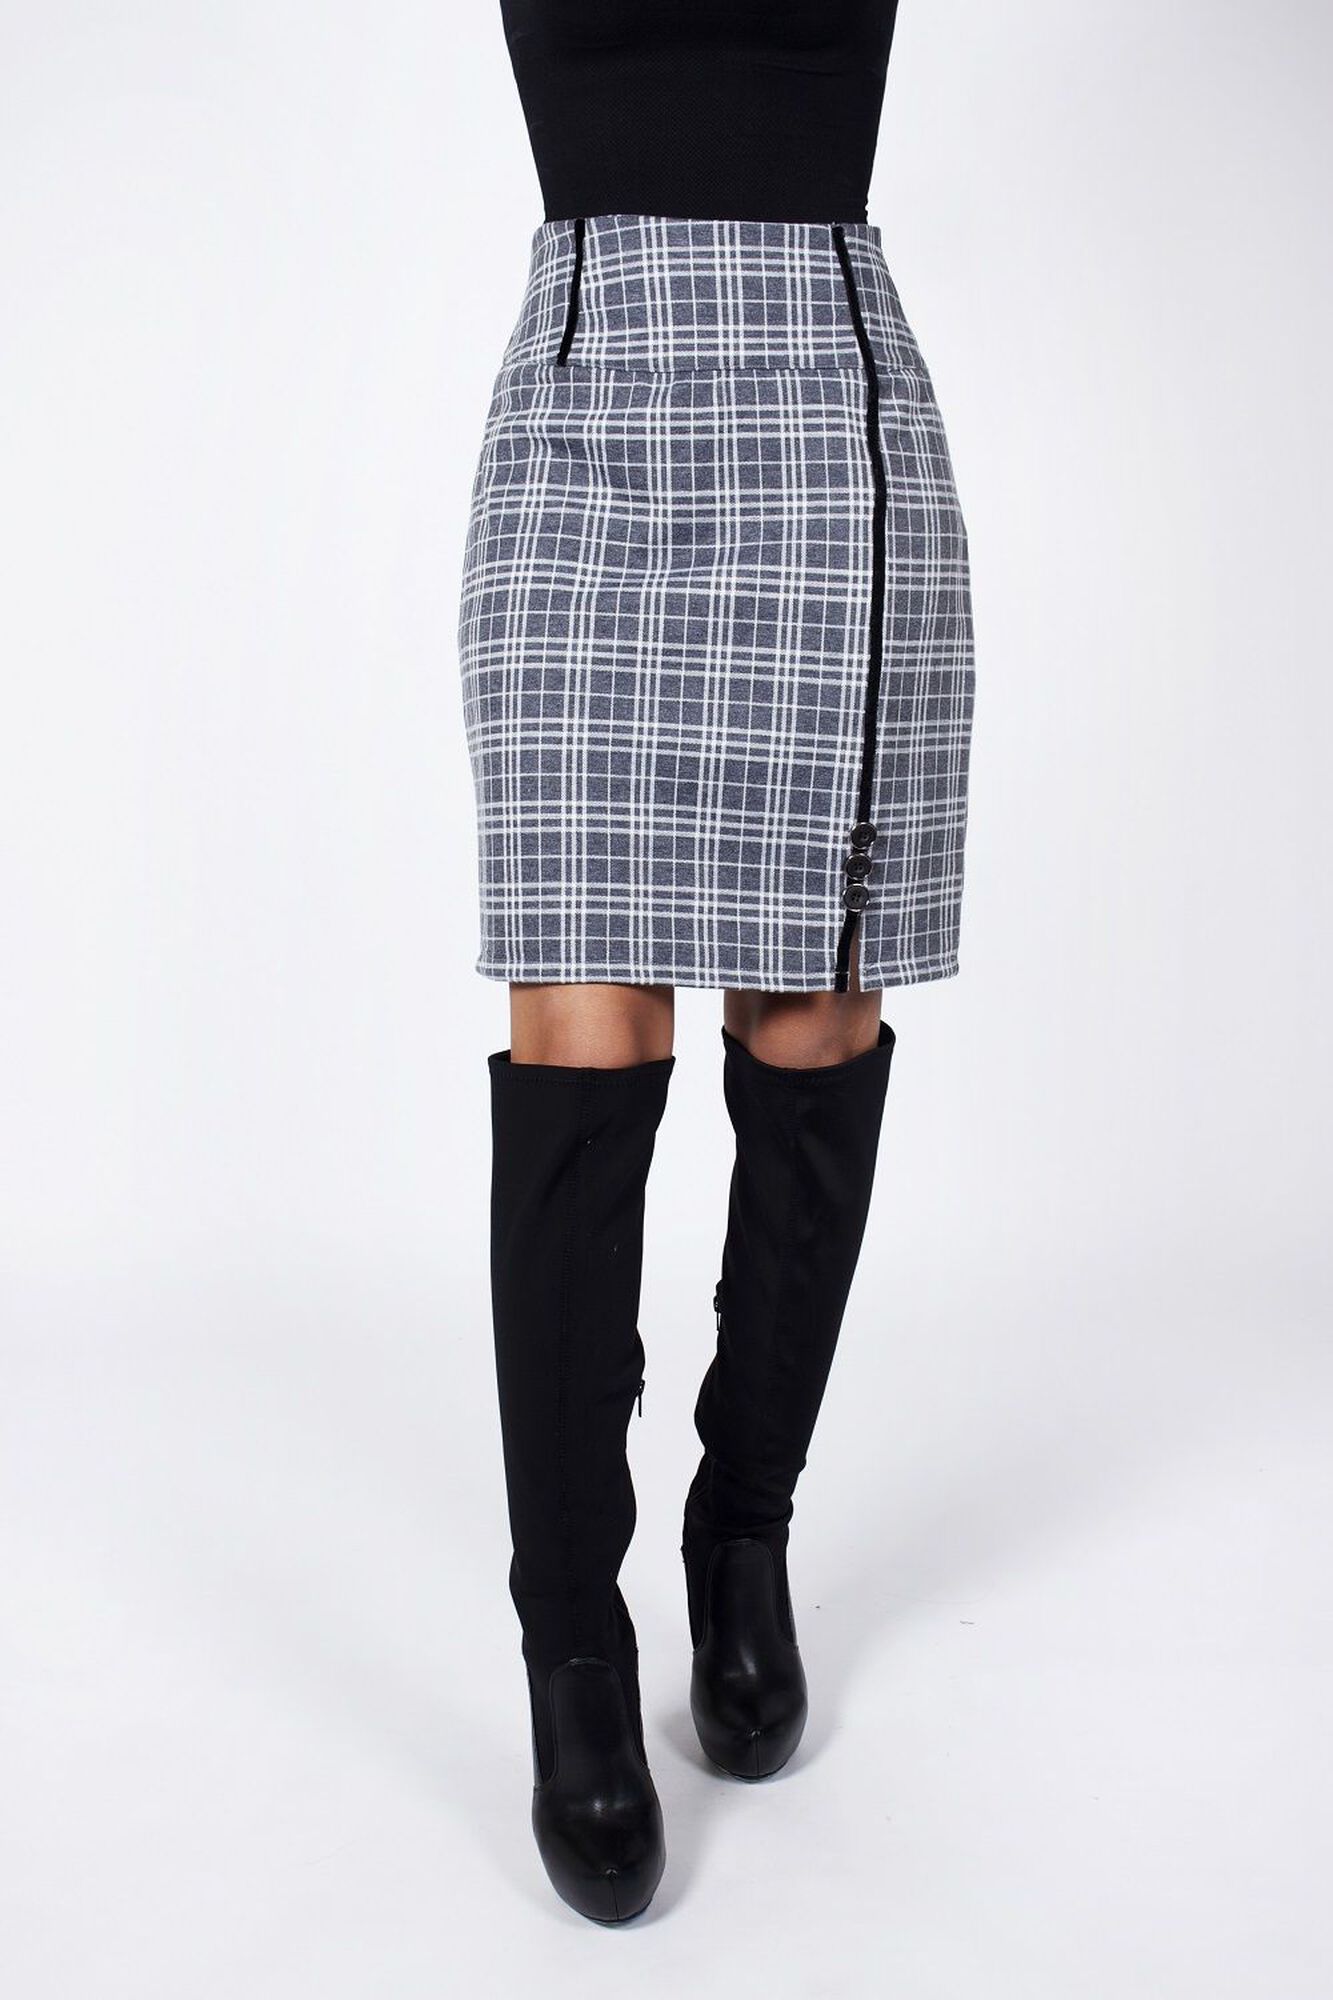 Destino Circular Federal Falda escocesa aplic. terciopelo gris - Vestidos y Faldas | Paris.cl